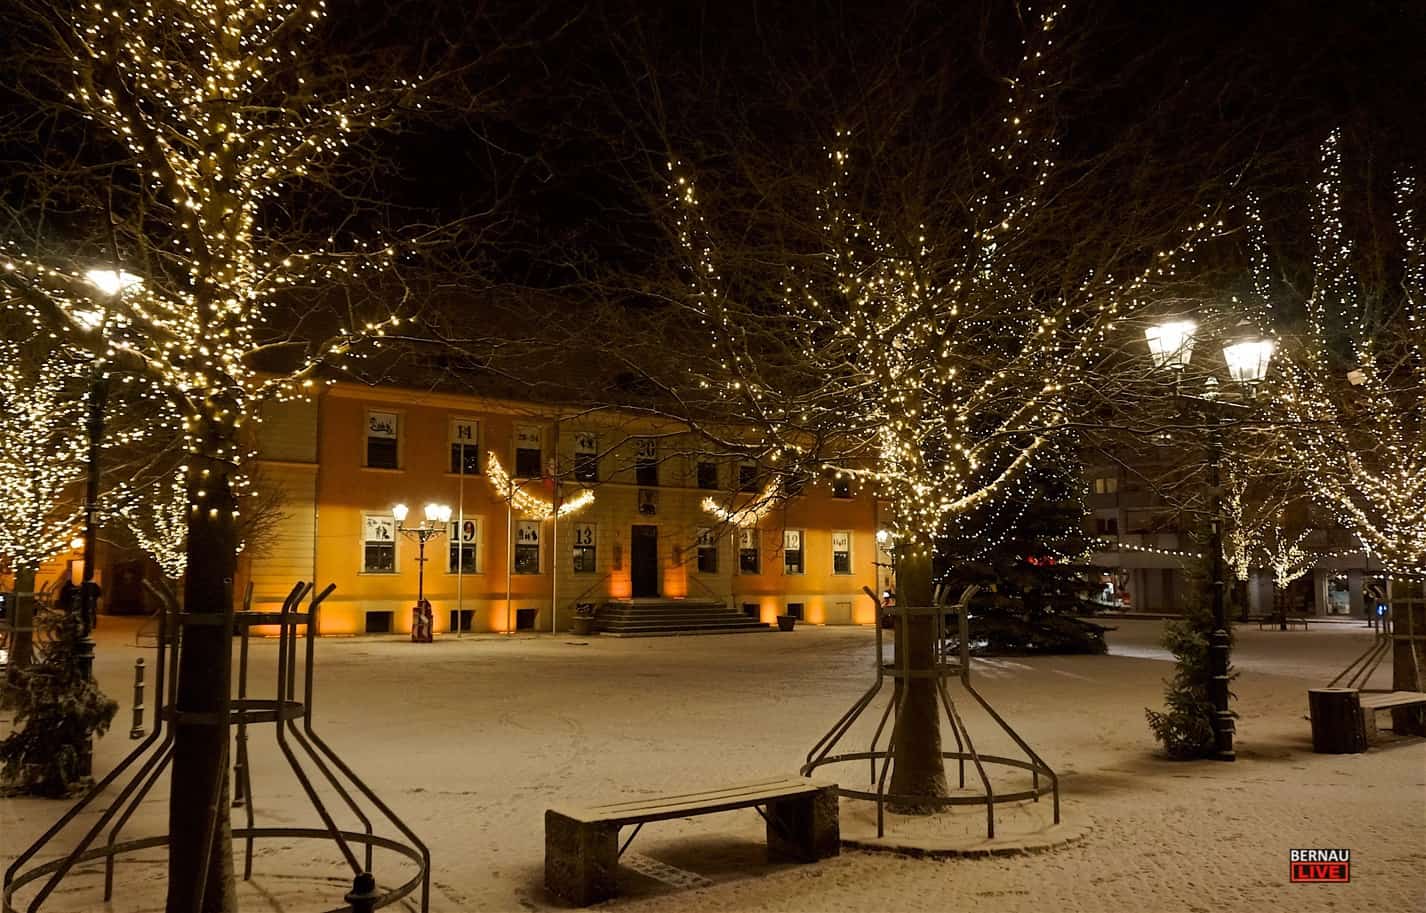 In Bernau und Drumherum schneit es - Vorsicht auf den Straßen